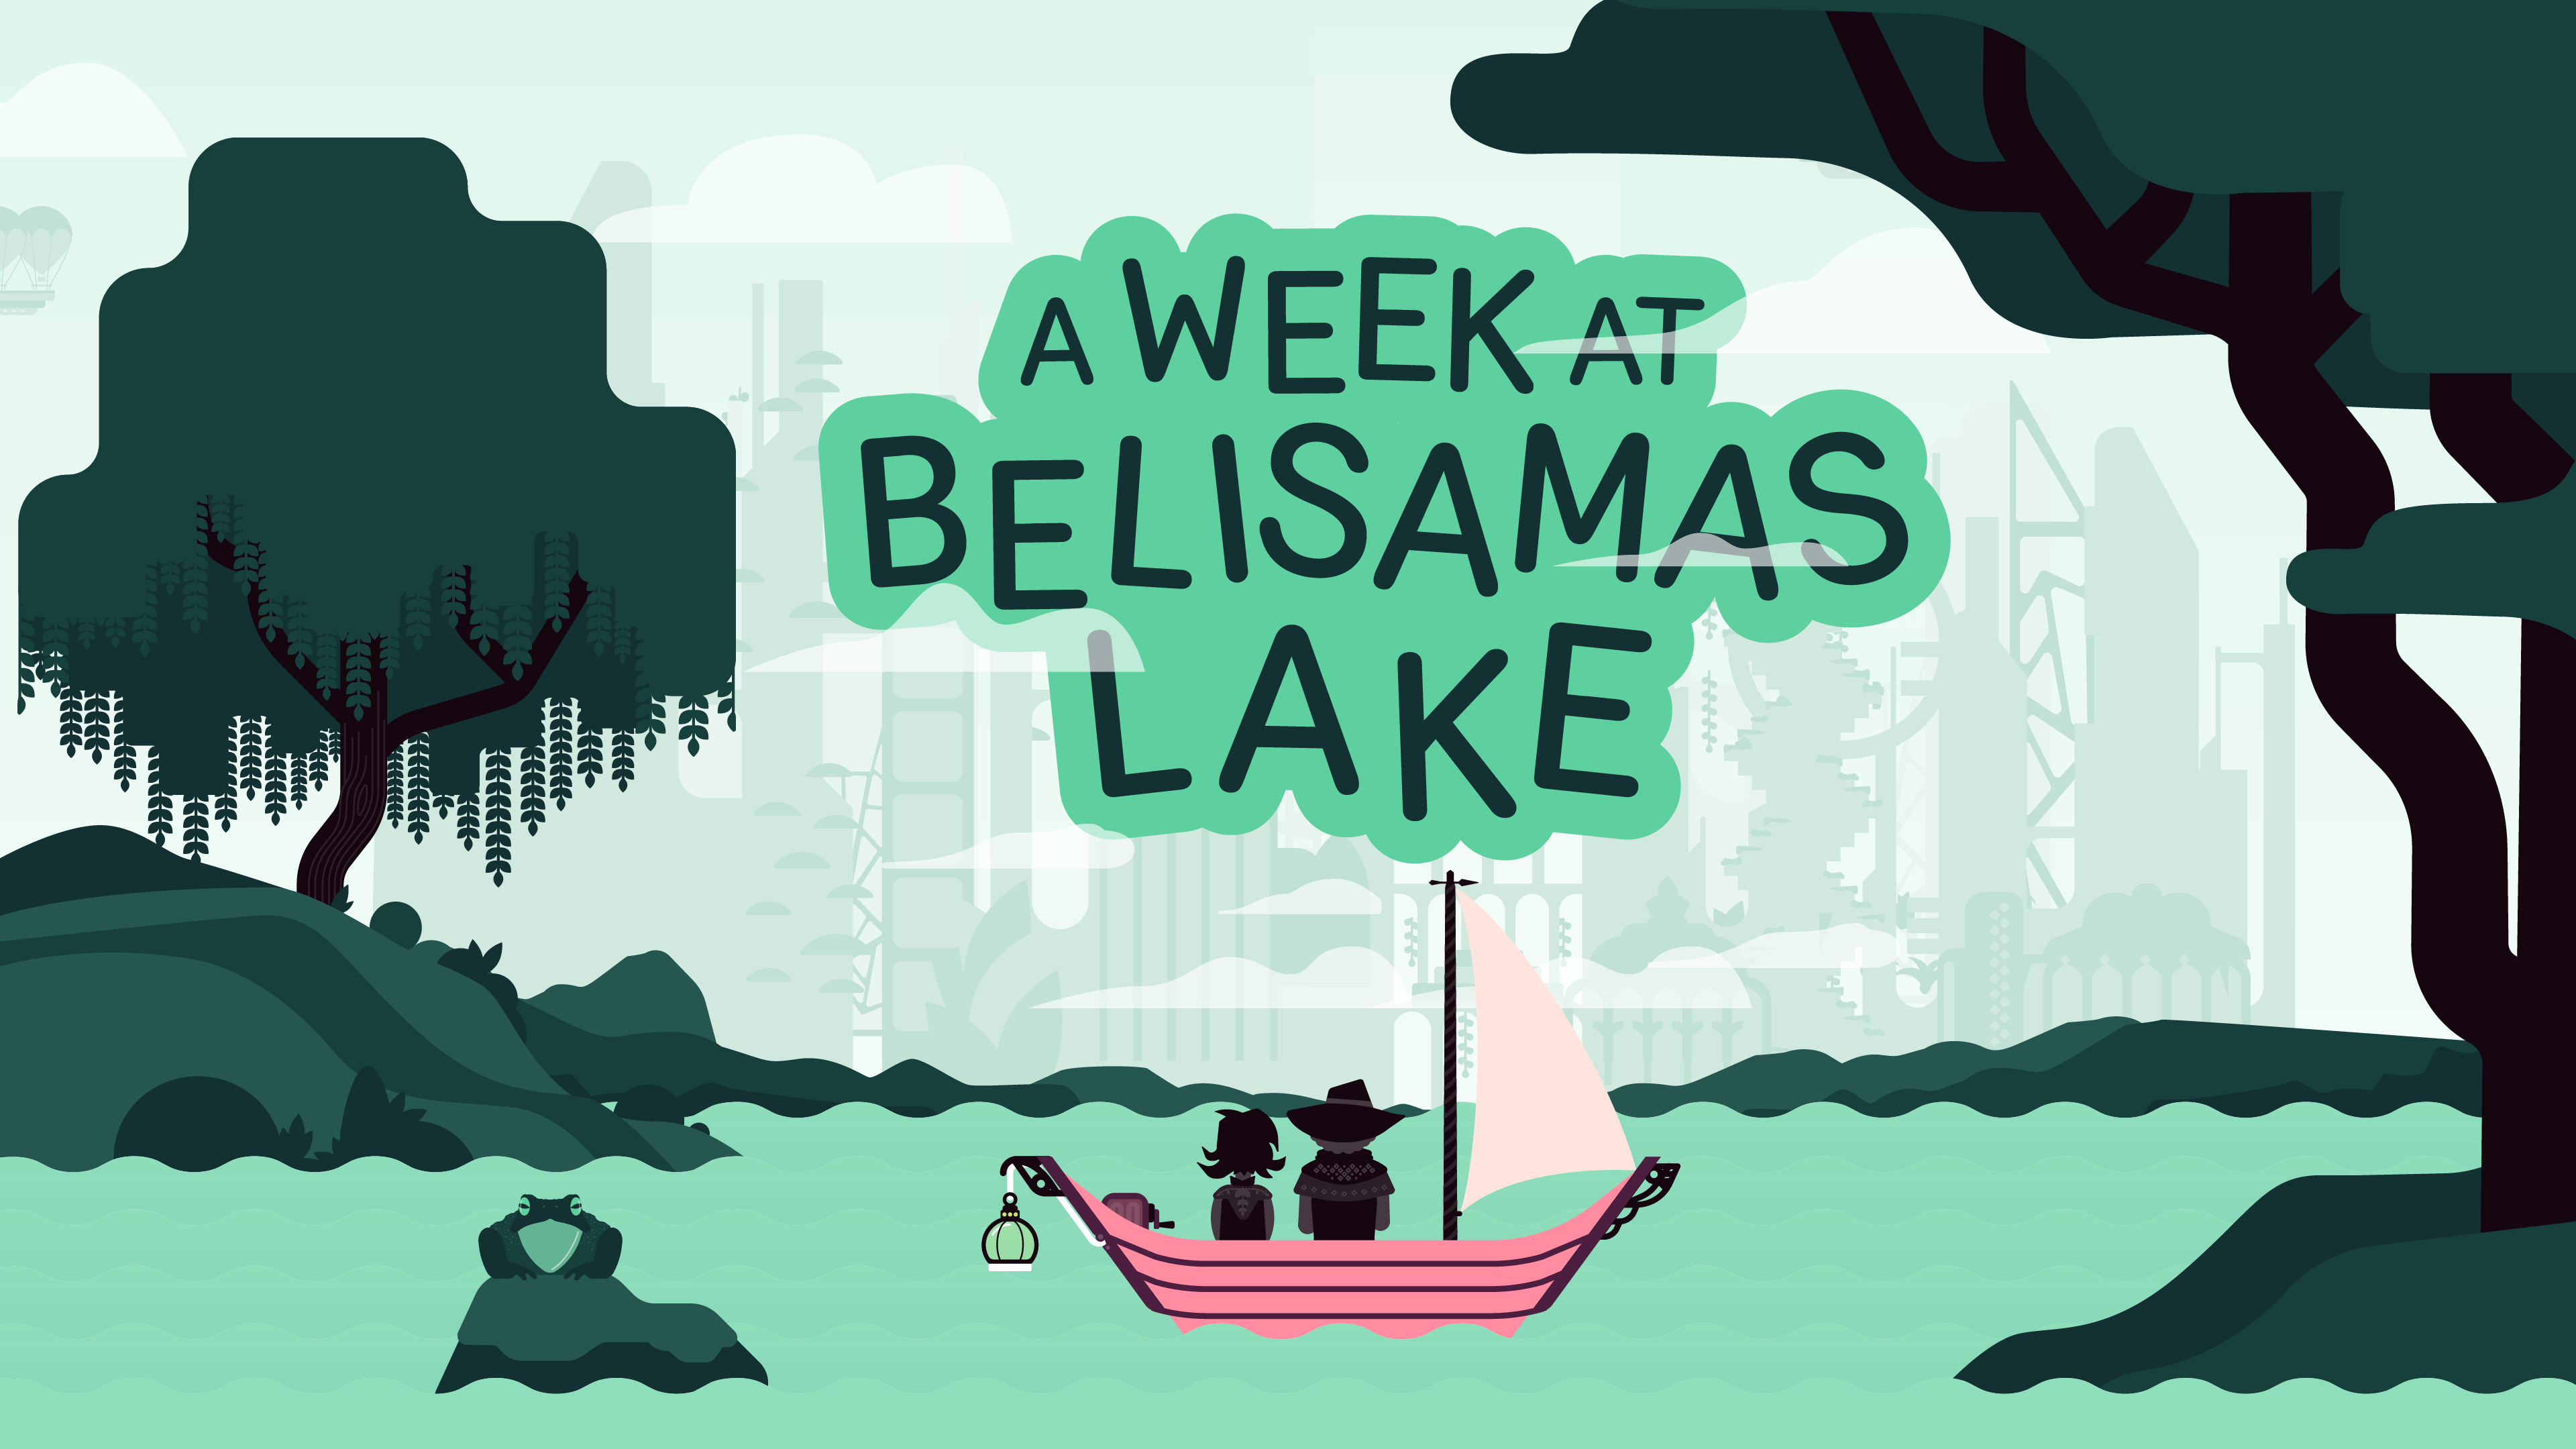 A Week at Belisamas Lake